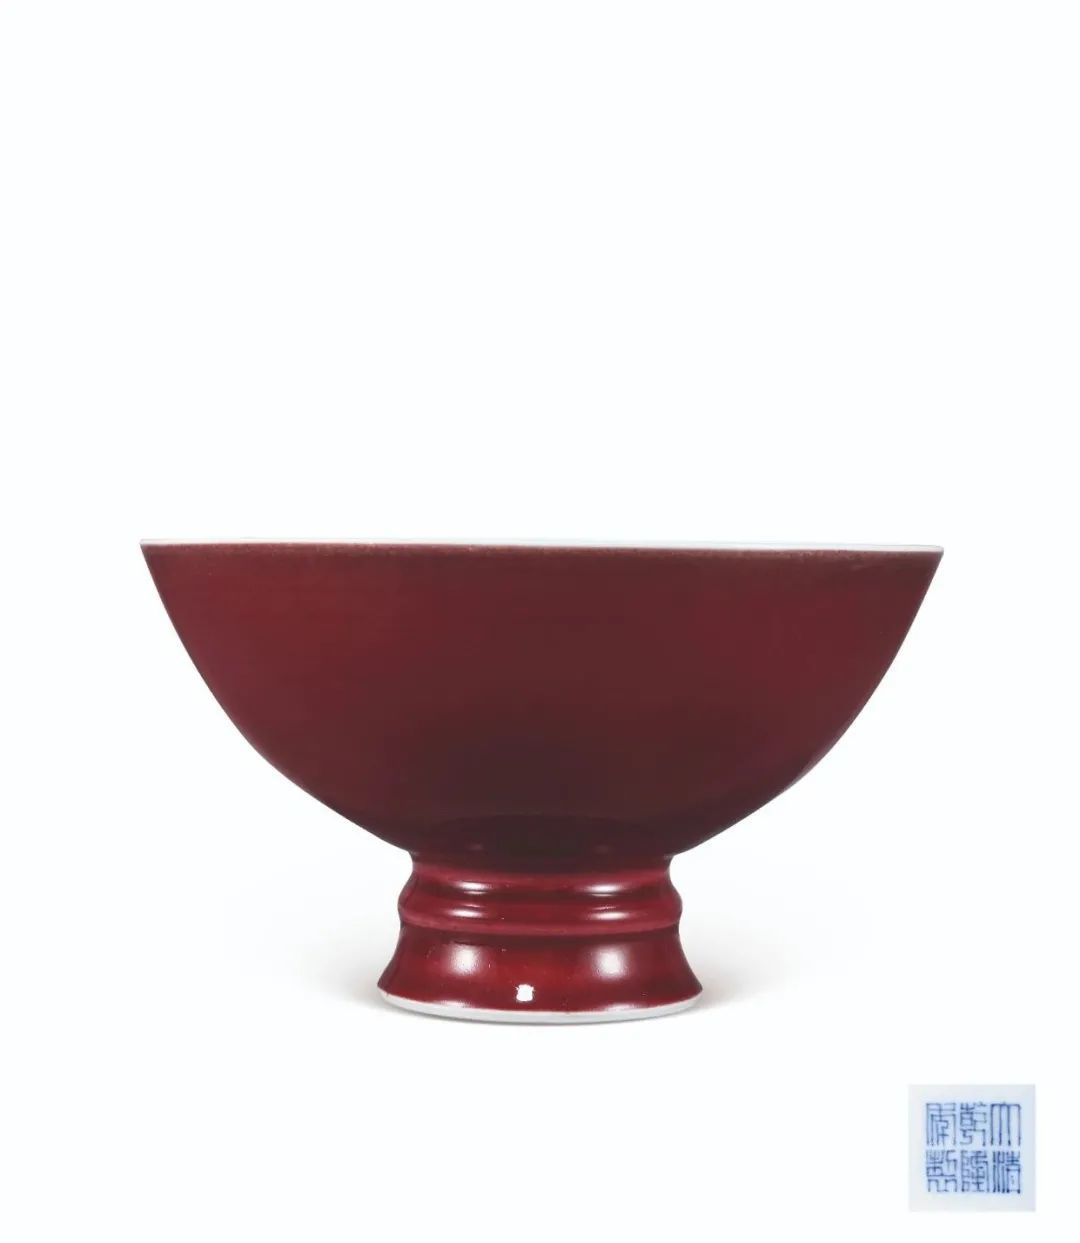 色釉如玉 保利香港十月拍卖，颜色釉瓷精选公布